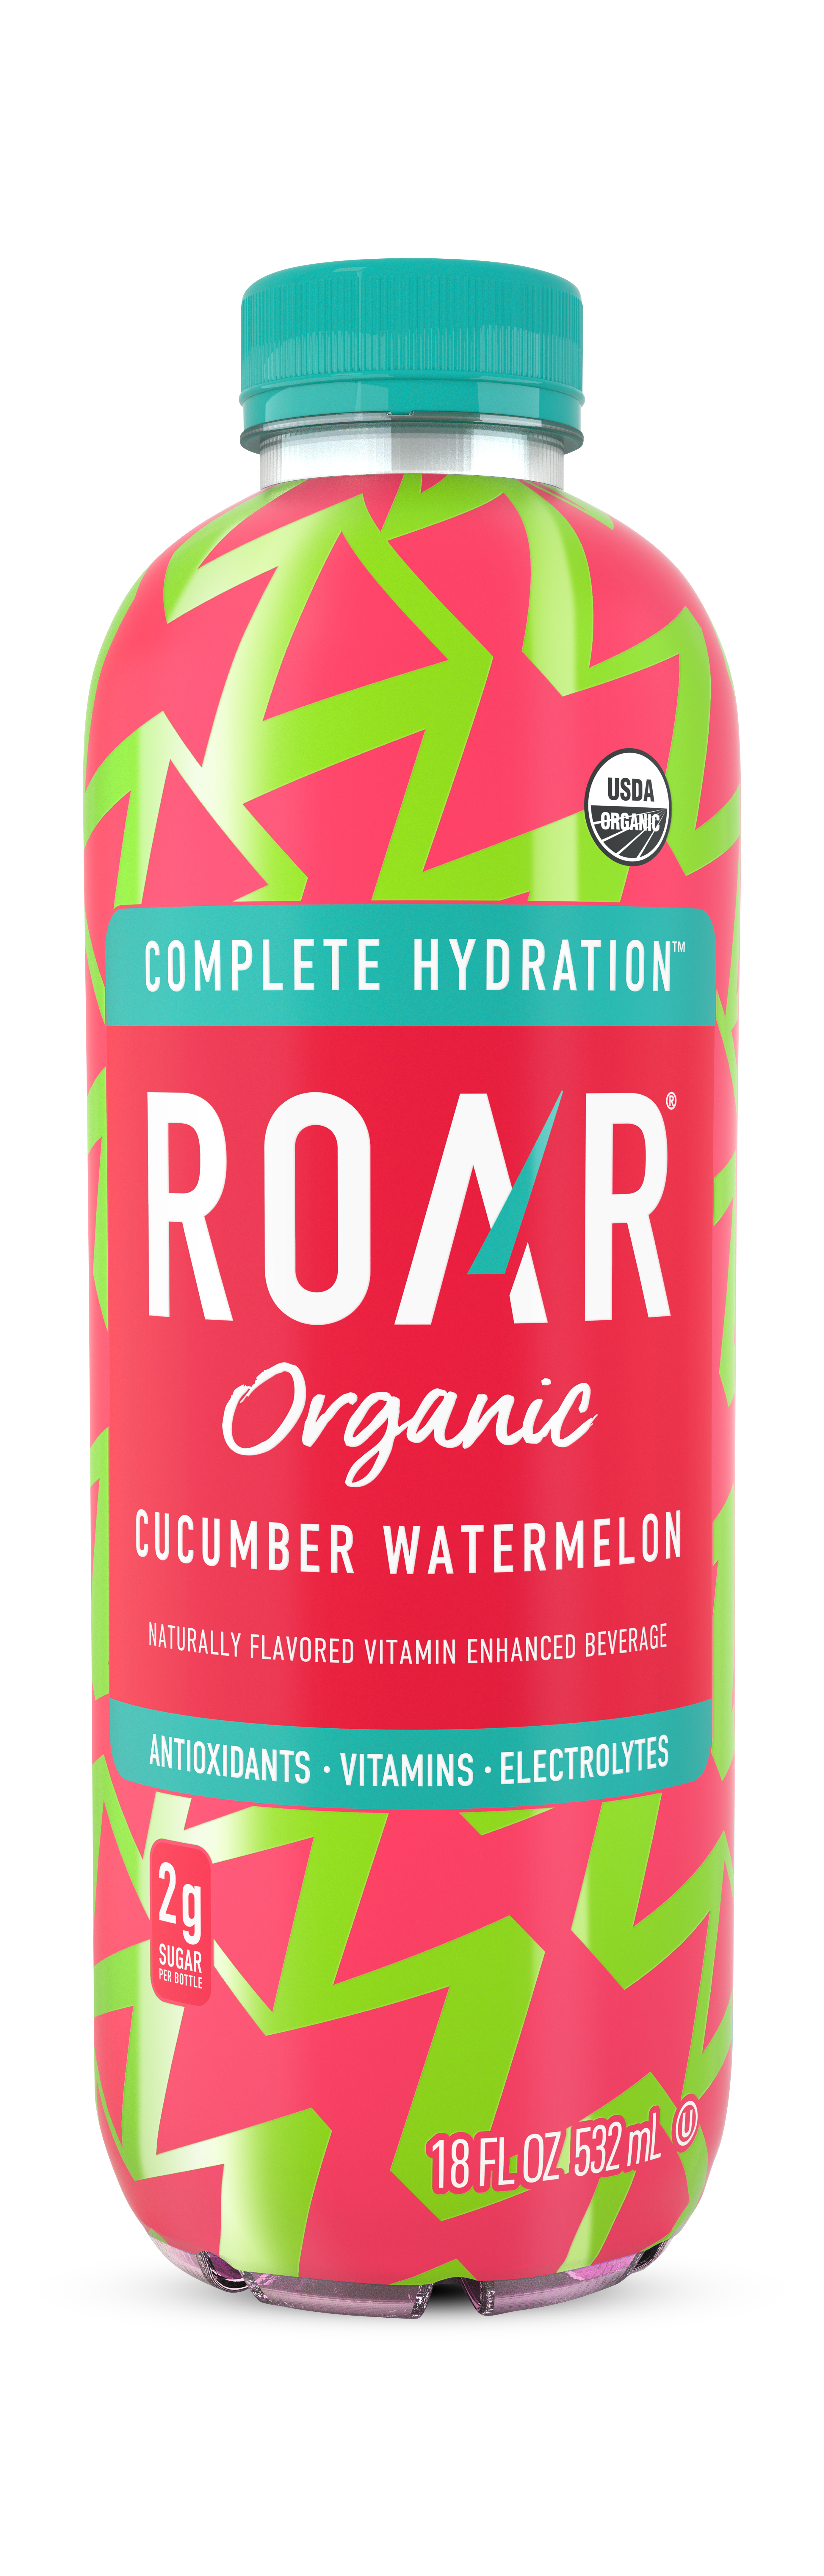 Roar Organic Cucumber Watermelon 1 units per case 18.0 oz